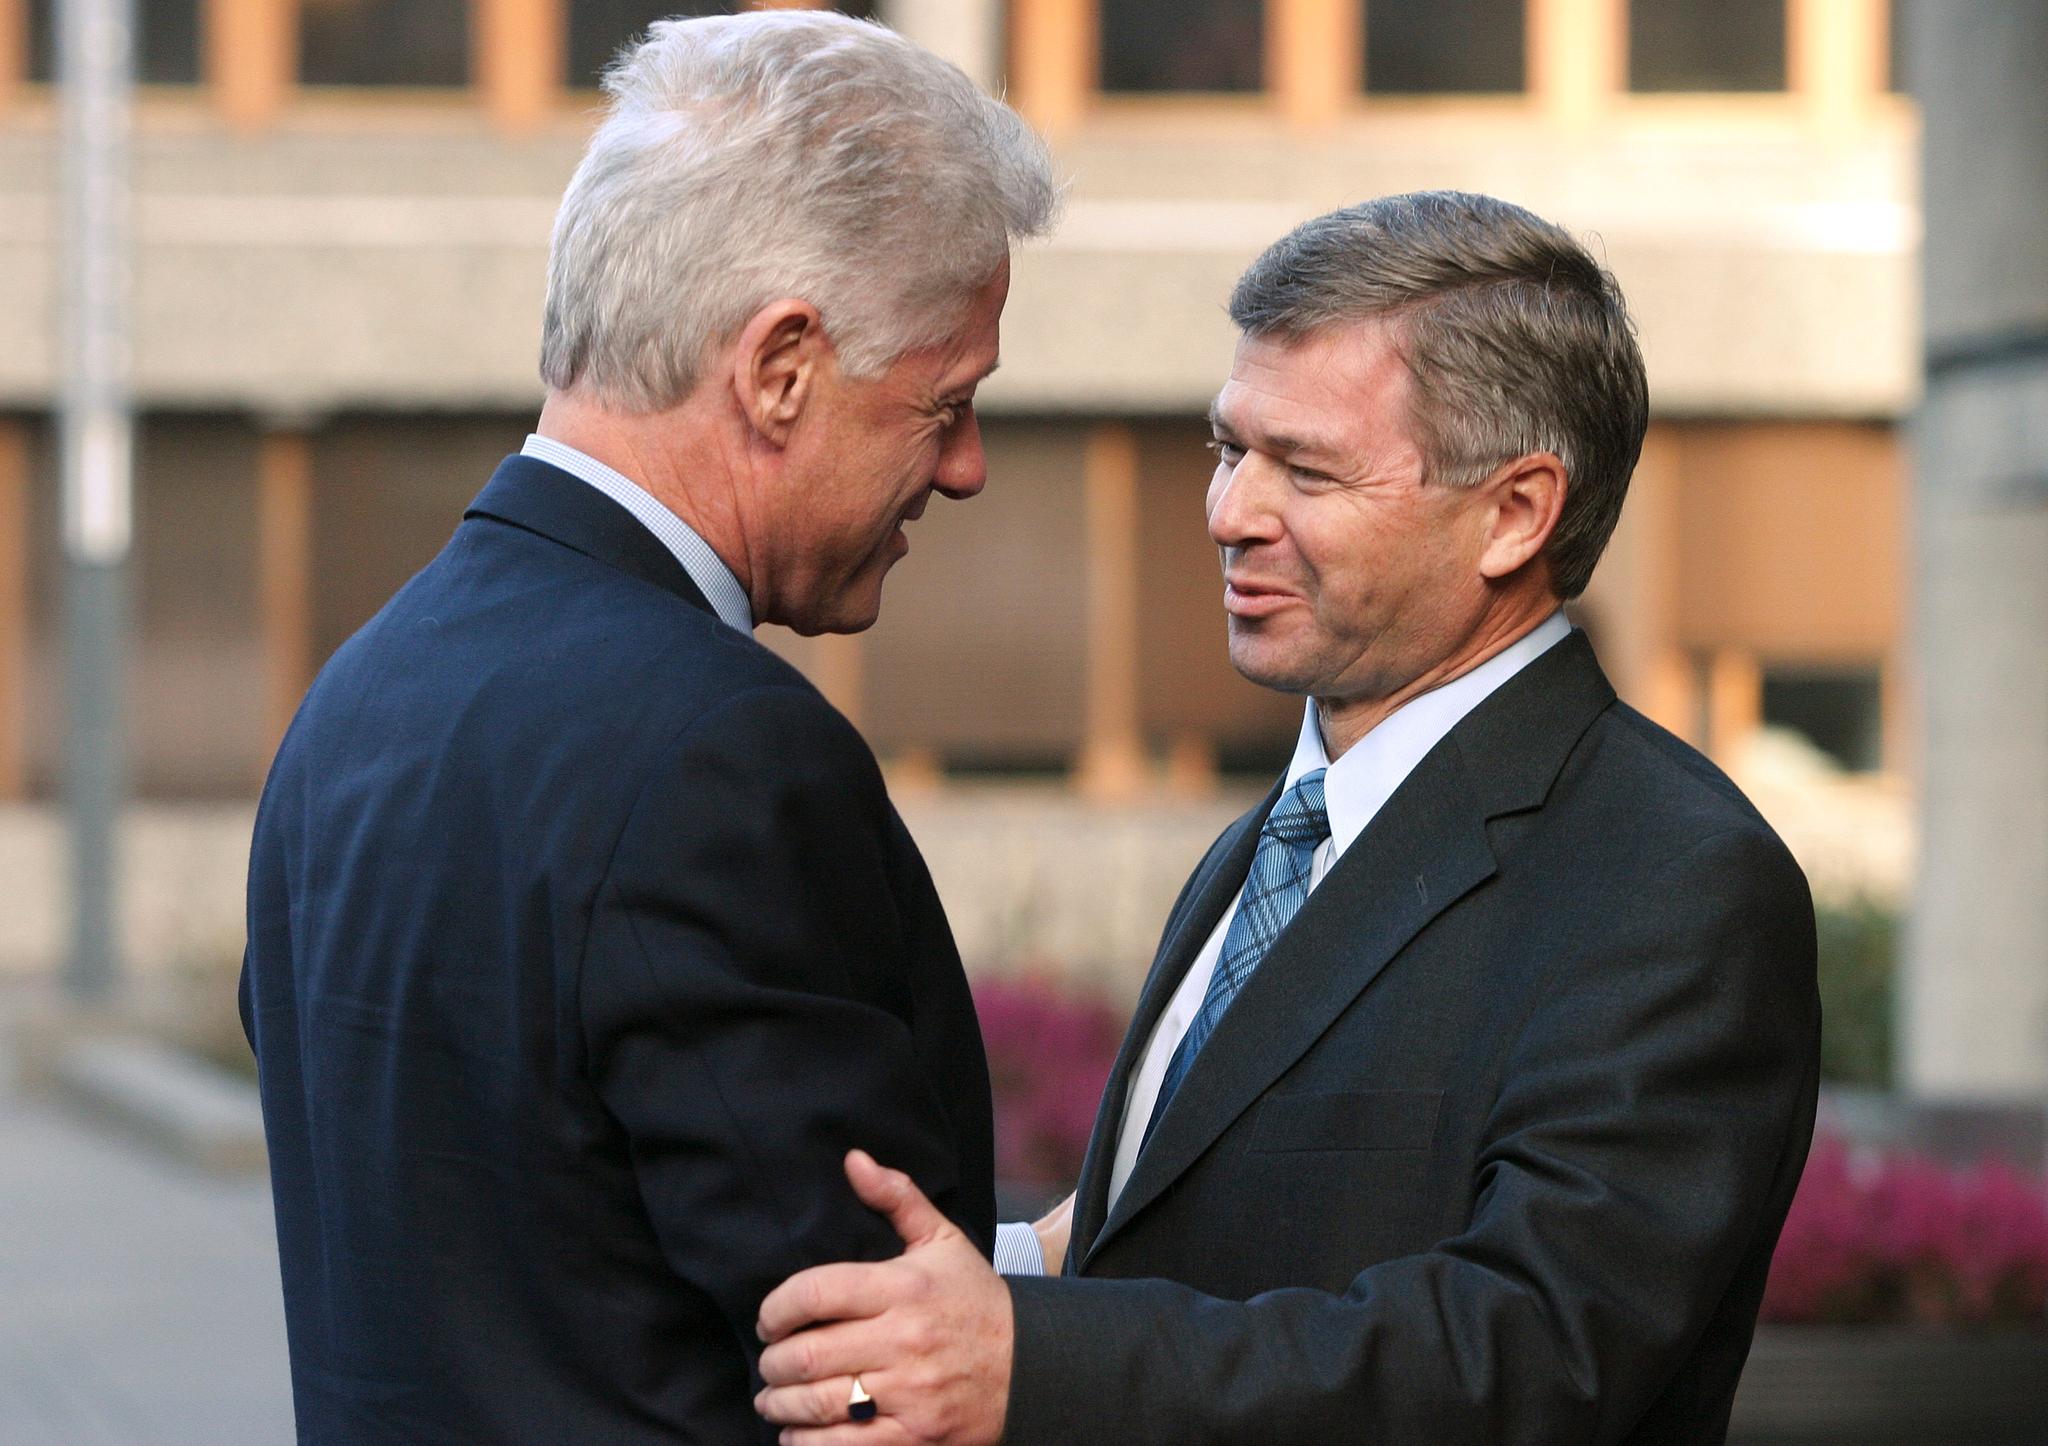 Bill Clinton møtte statsminister Kjell Magne Bondevik og fikk forsikringer om norsk støtte til sitt prosjekt mot aids i Afrika under Norgesbesøket.